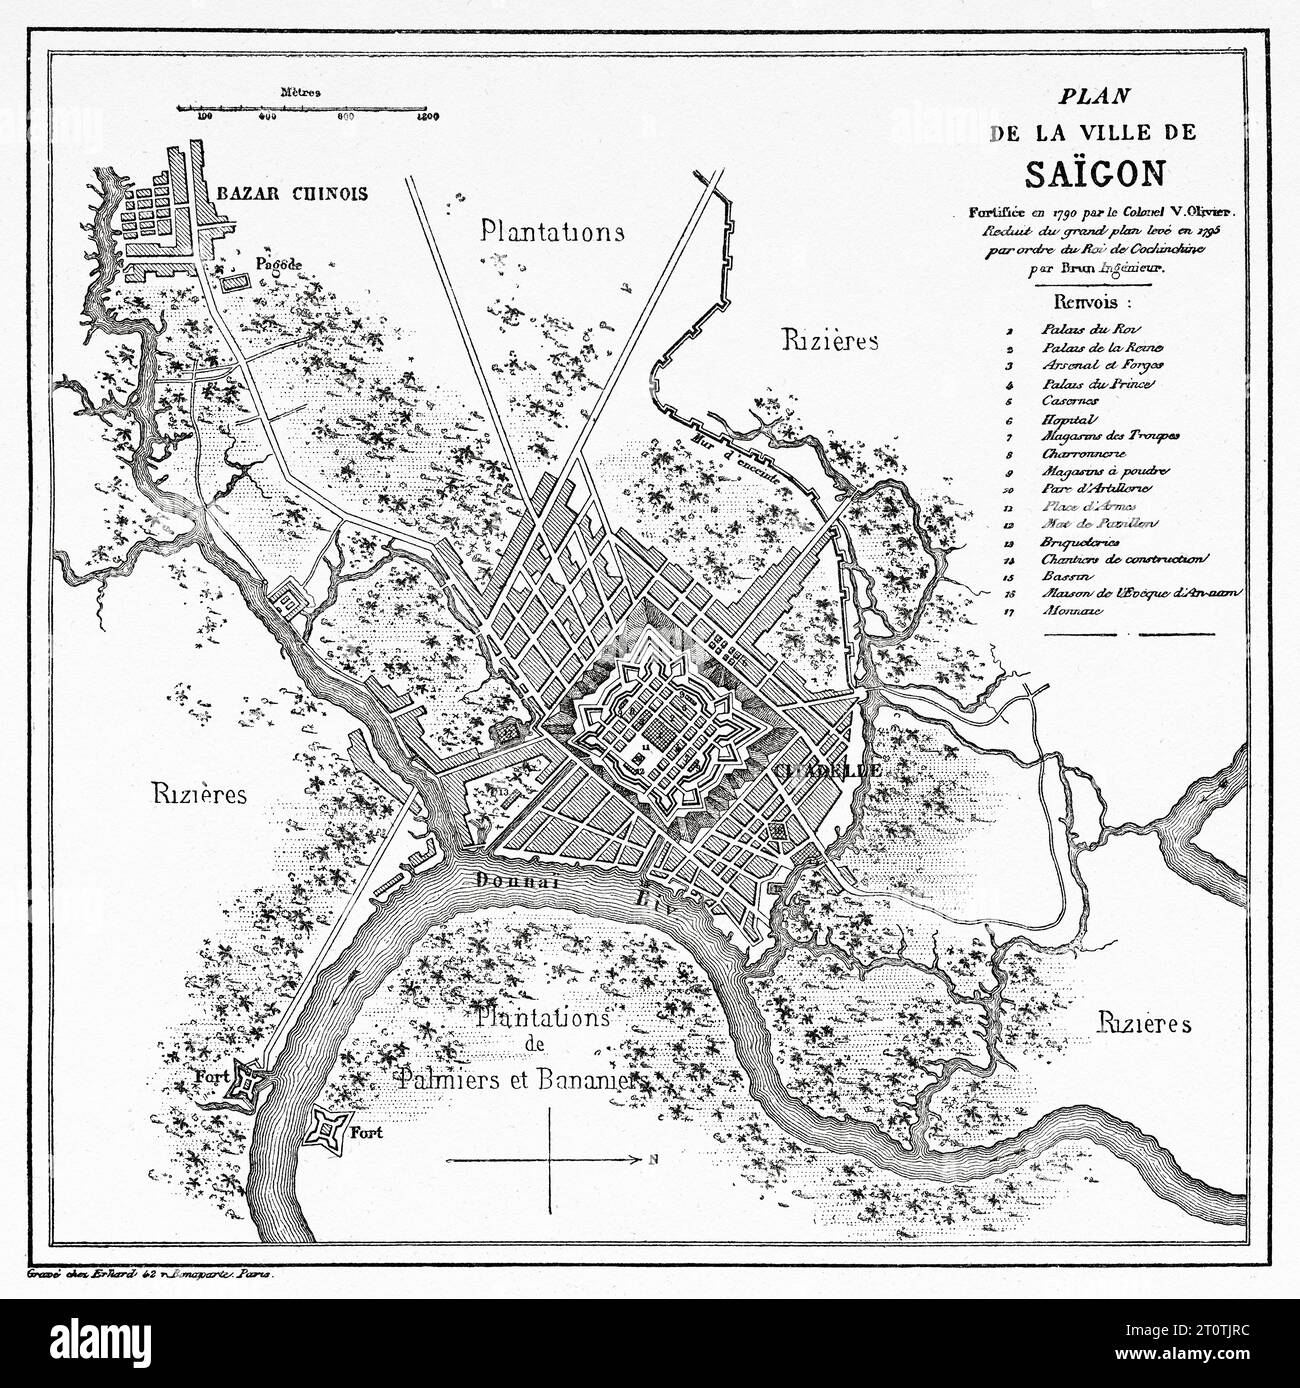 Ancienne carte de la ville de Saigon. Vietnam. Indochine. Gravure ancienne du 19e siècle du Tour du monde 1860 Banque D'Images